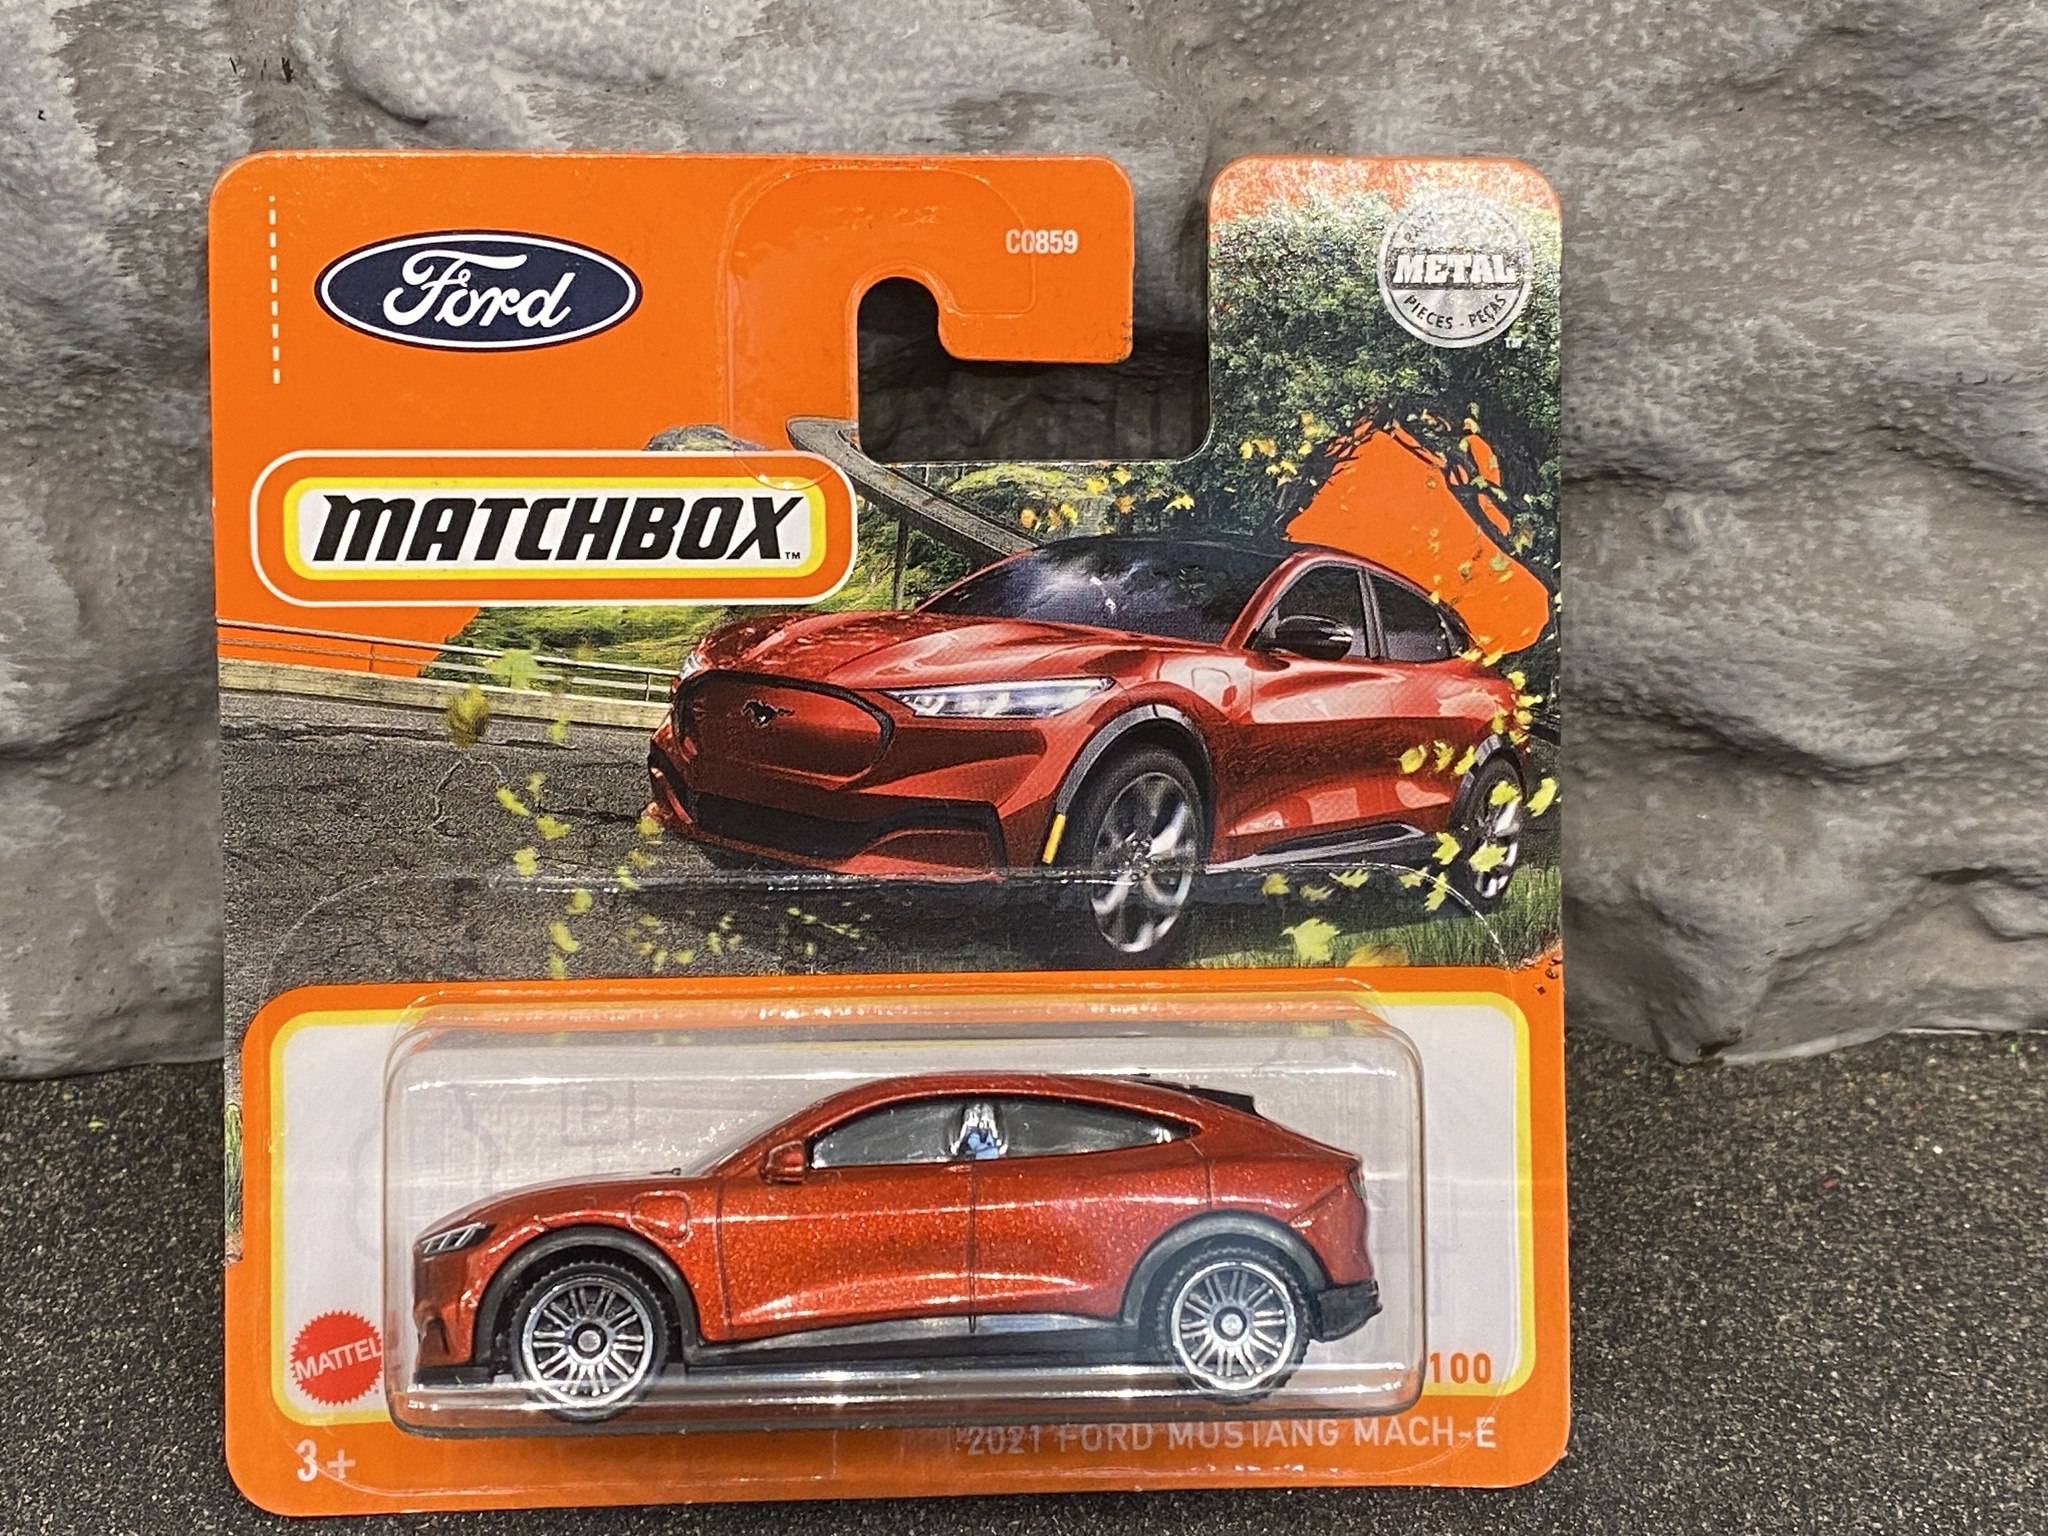 Skala 1/64 Matchbox - Ford Mustang Mach-E 2021, Mörkröd metallic